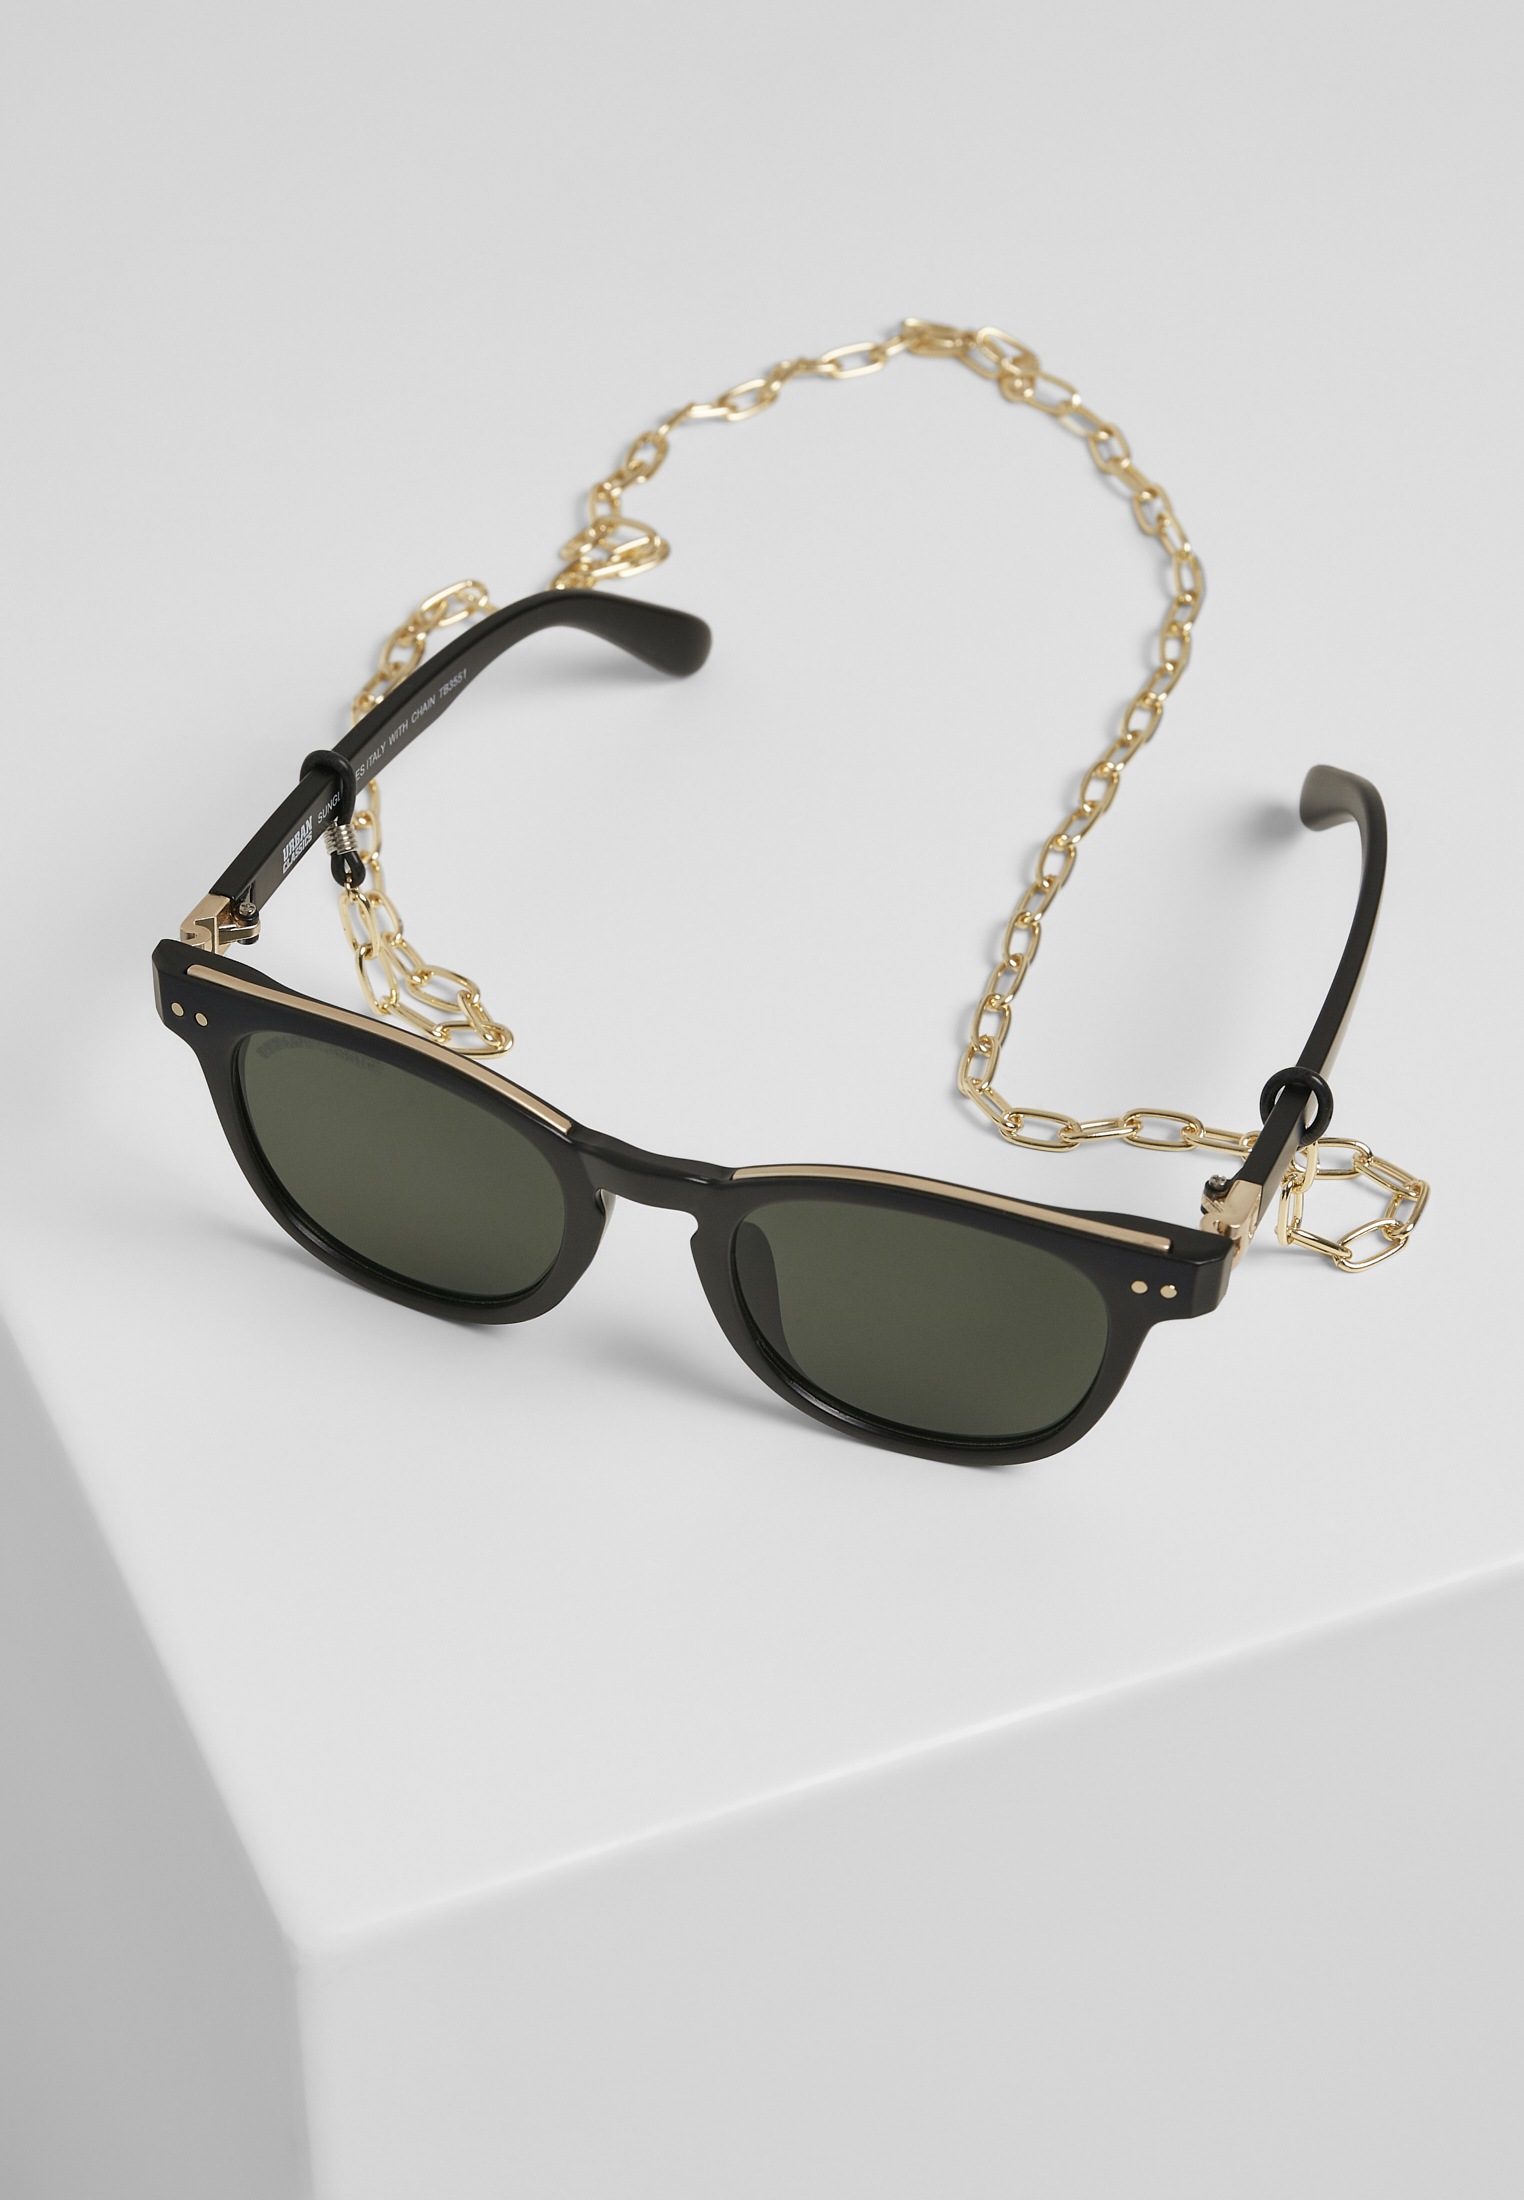 bestellen »Unisex Italy URBAN with chain« Sunglasses Sonnenbrille CLASSICS | online BAUR